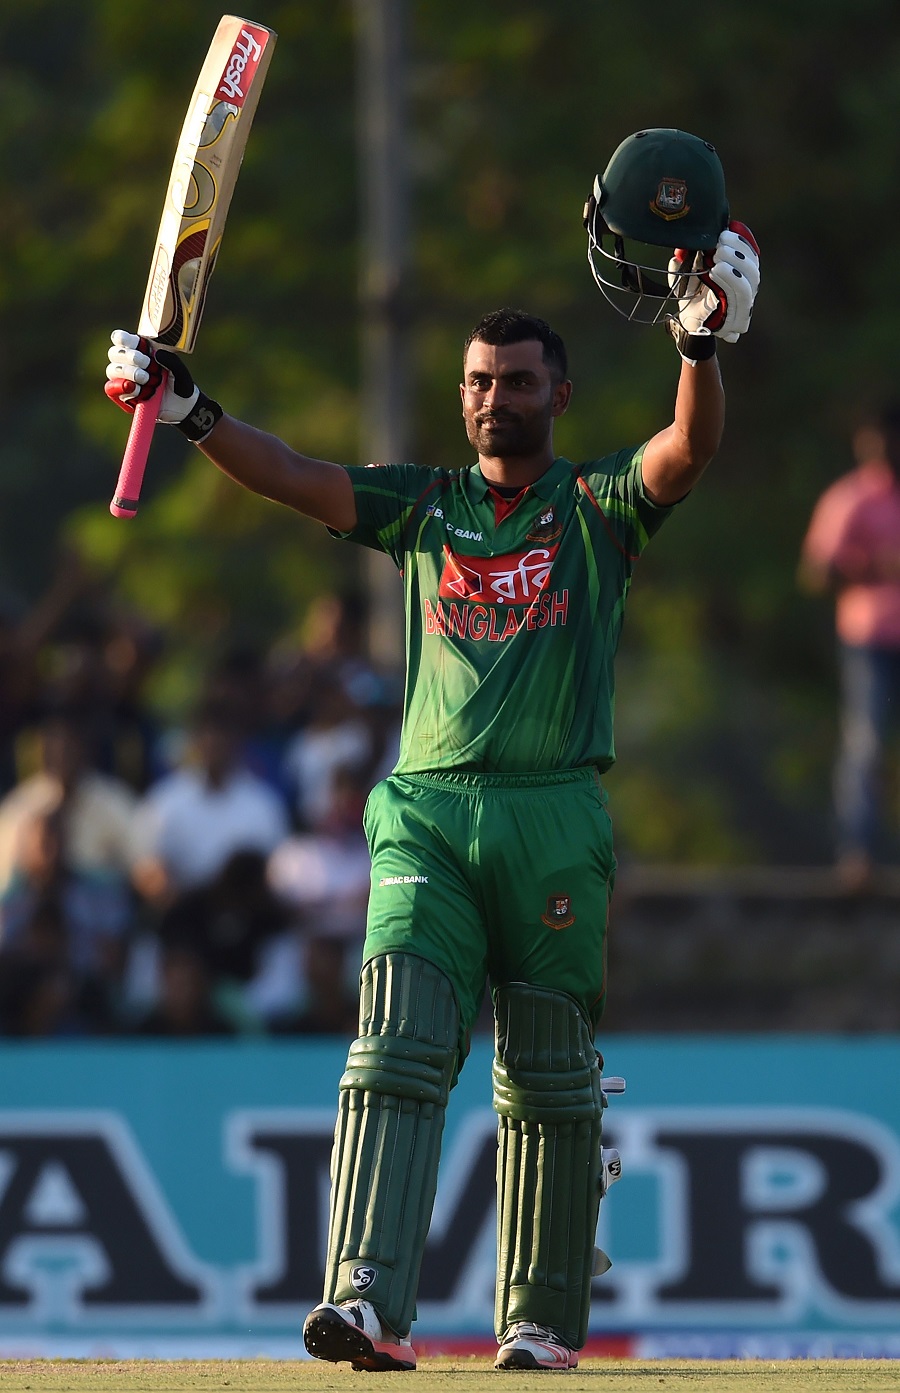 बांग्लादेश के लिए यह उपलब्धि हासिल करने वाले पहले खिलाड़ी बने तमीम इक़बाल 11